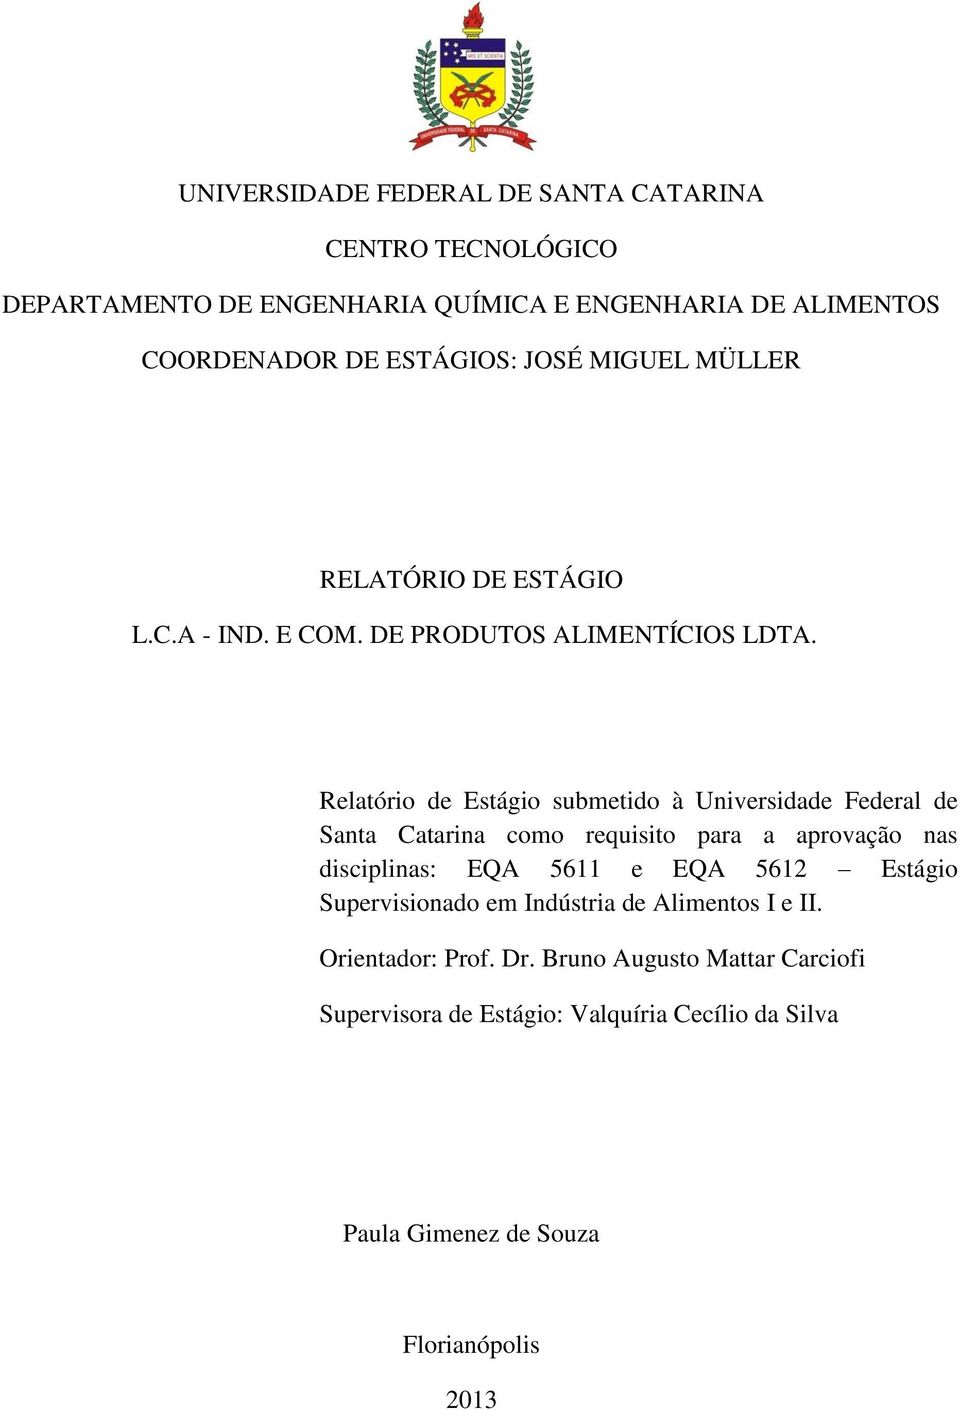 Relatório de Estágio submetido à Universidade Federal de Santa Catarina como requisito para a aprovação nas disciplinas: EQA 5611 e EQA 5612